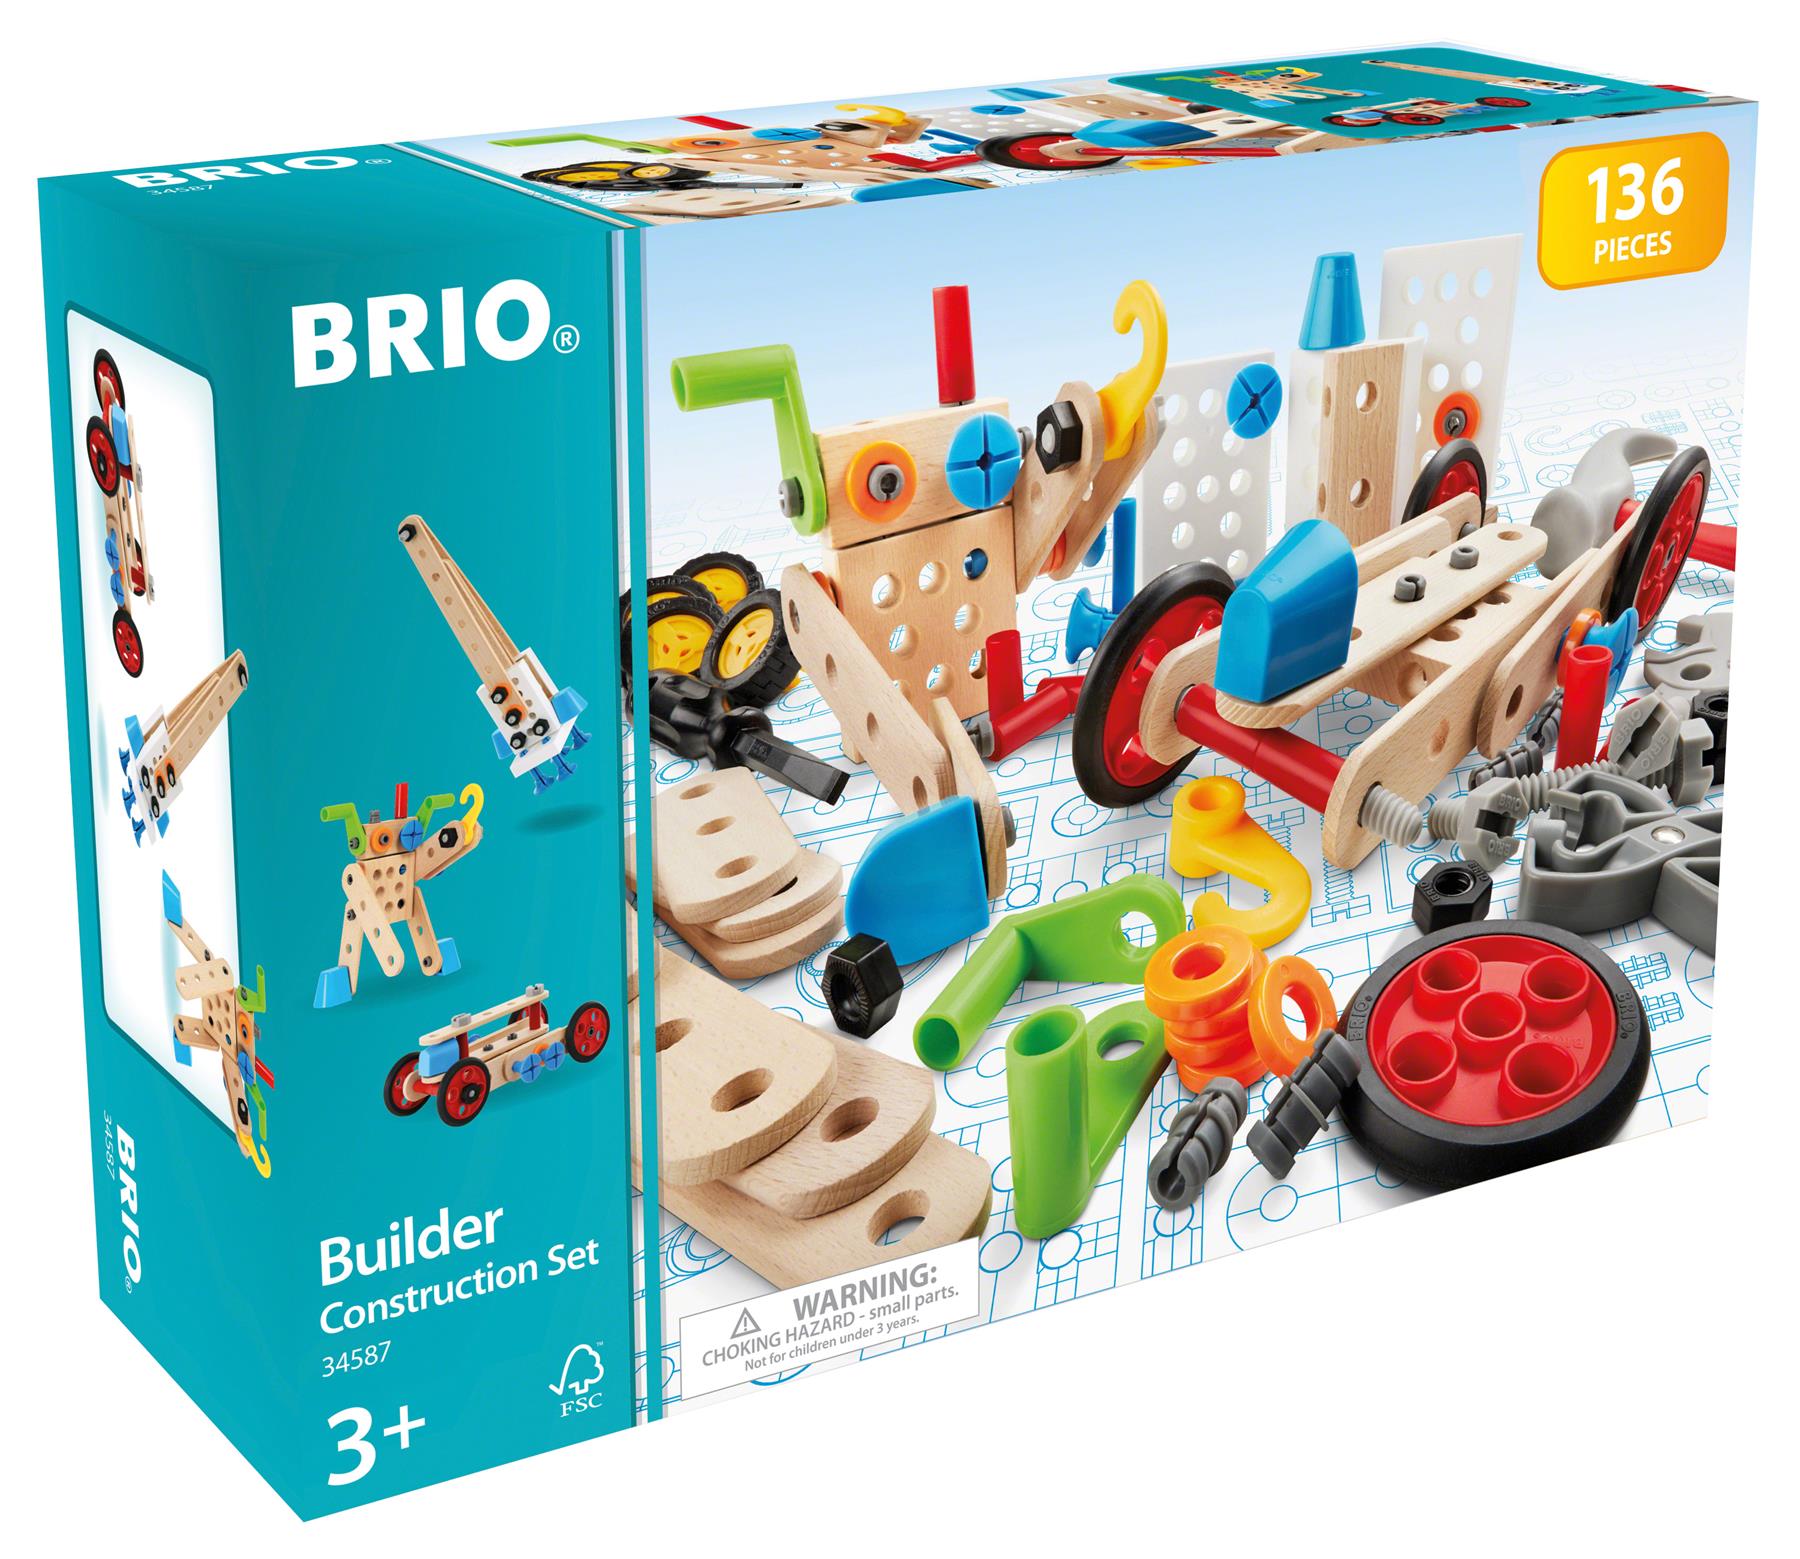 Brio Builder Construction Set